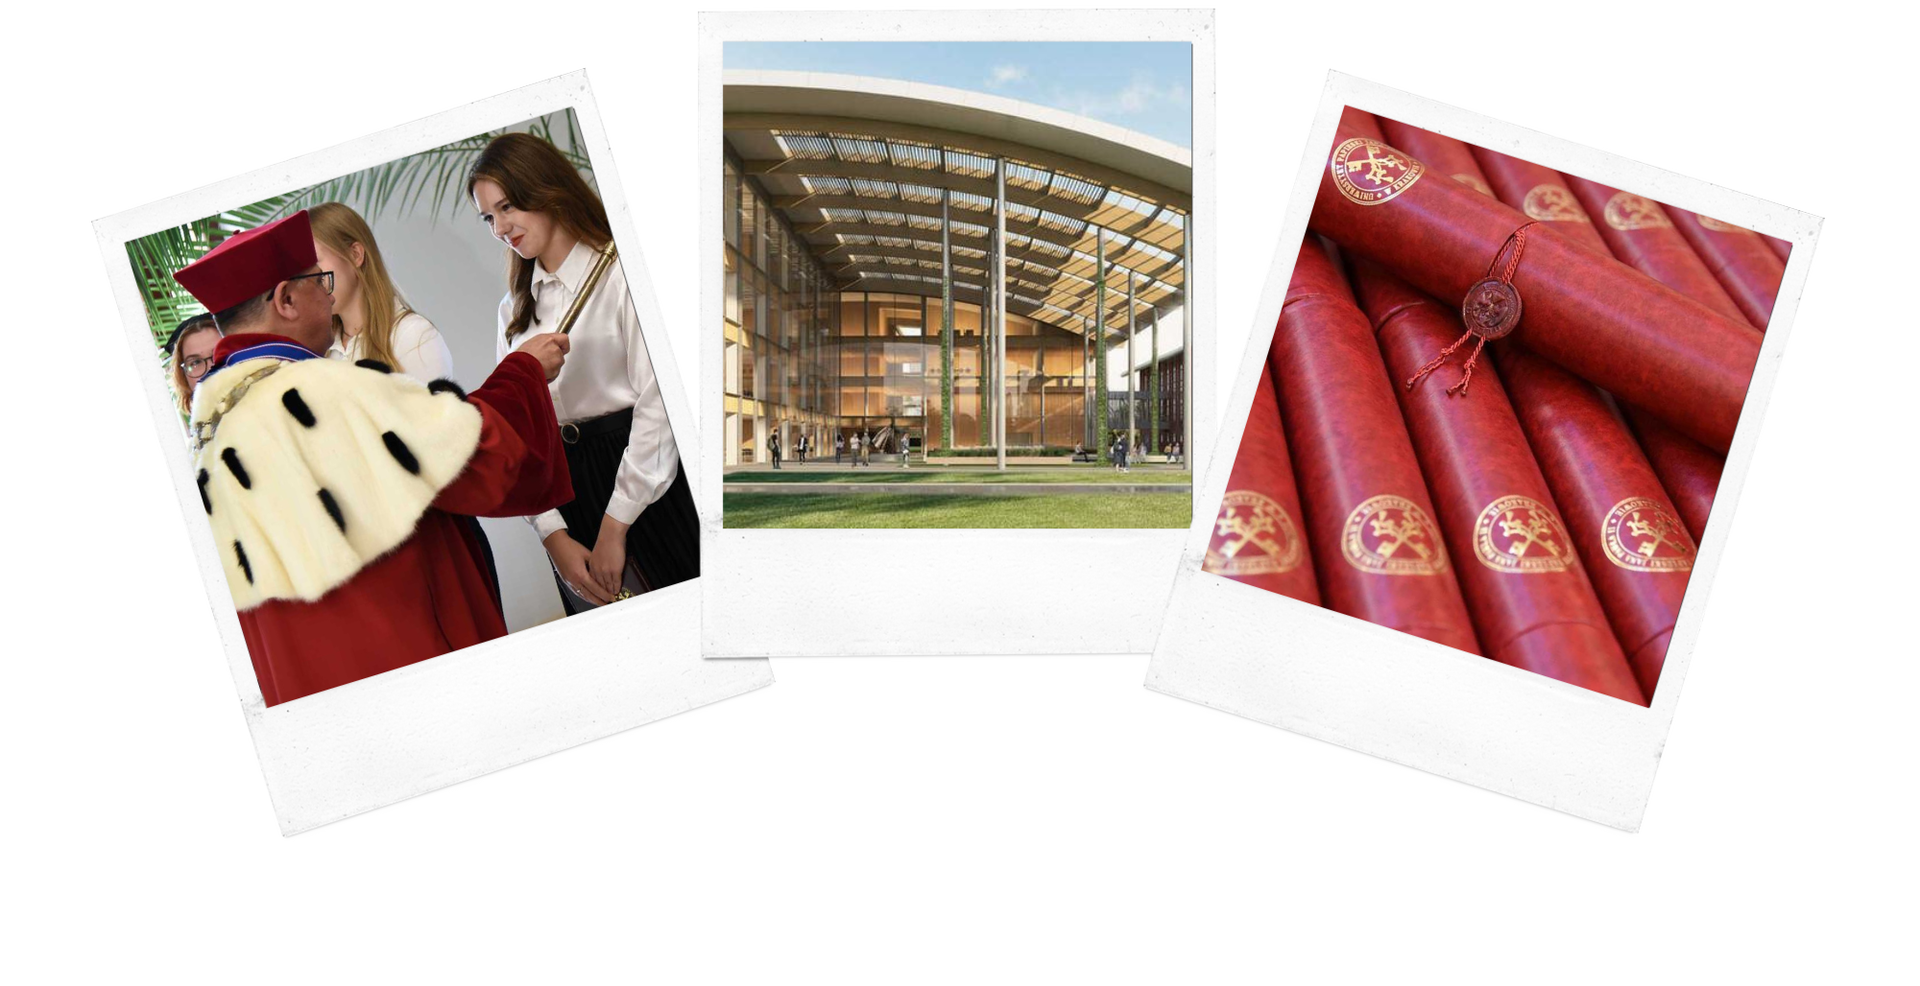 kolaż zdjęć pierwsze - studenci i rektor drugie kampus uniwersytetu trzecie czerwone dokumenty ze złotym logiem uniwersytetu